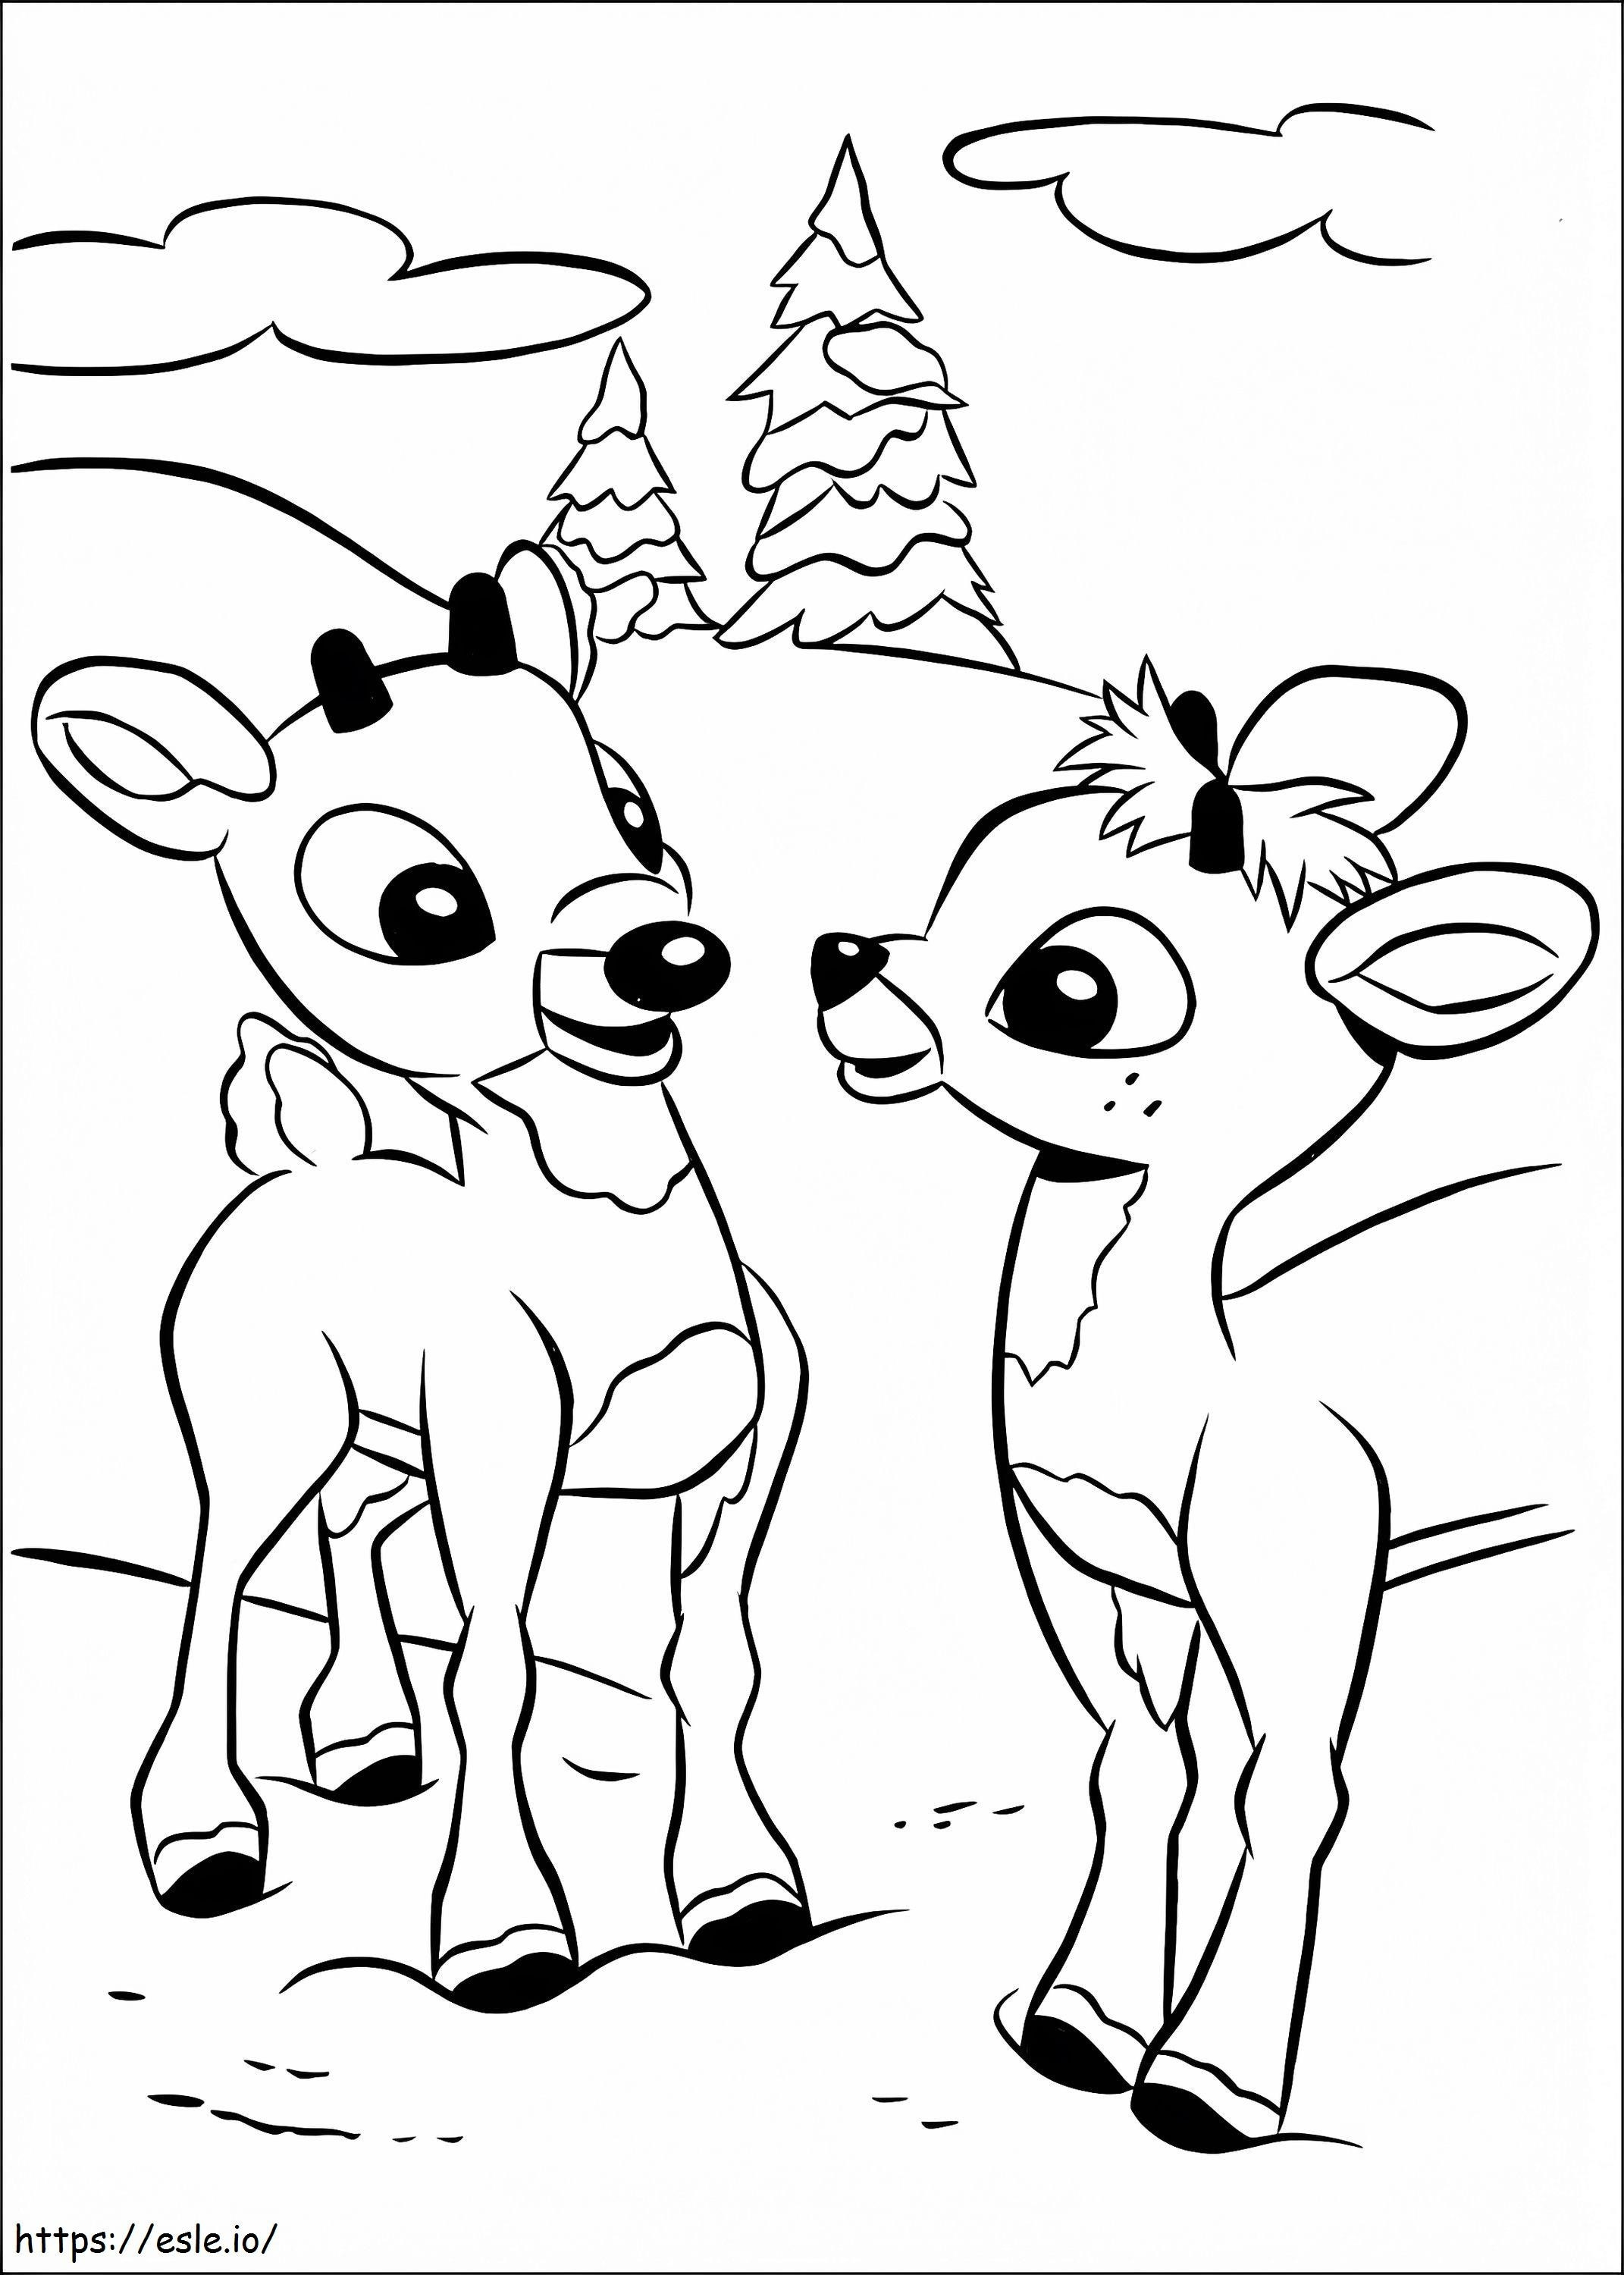 Rudolph und Freund ausmalbilder